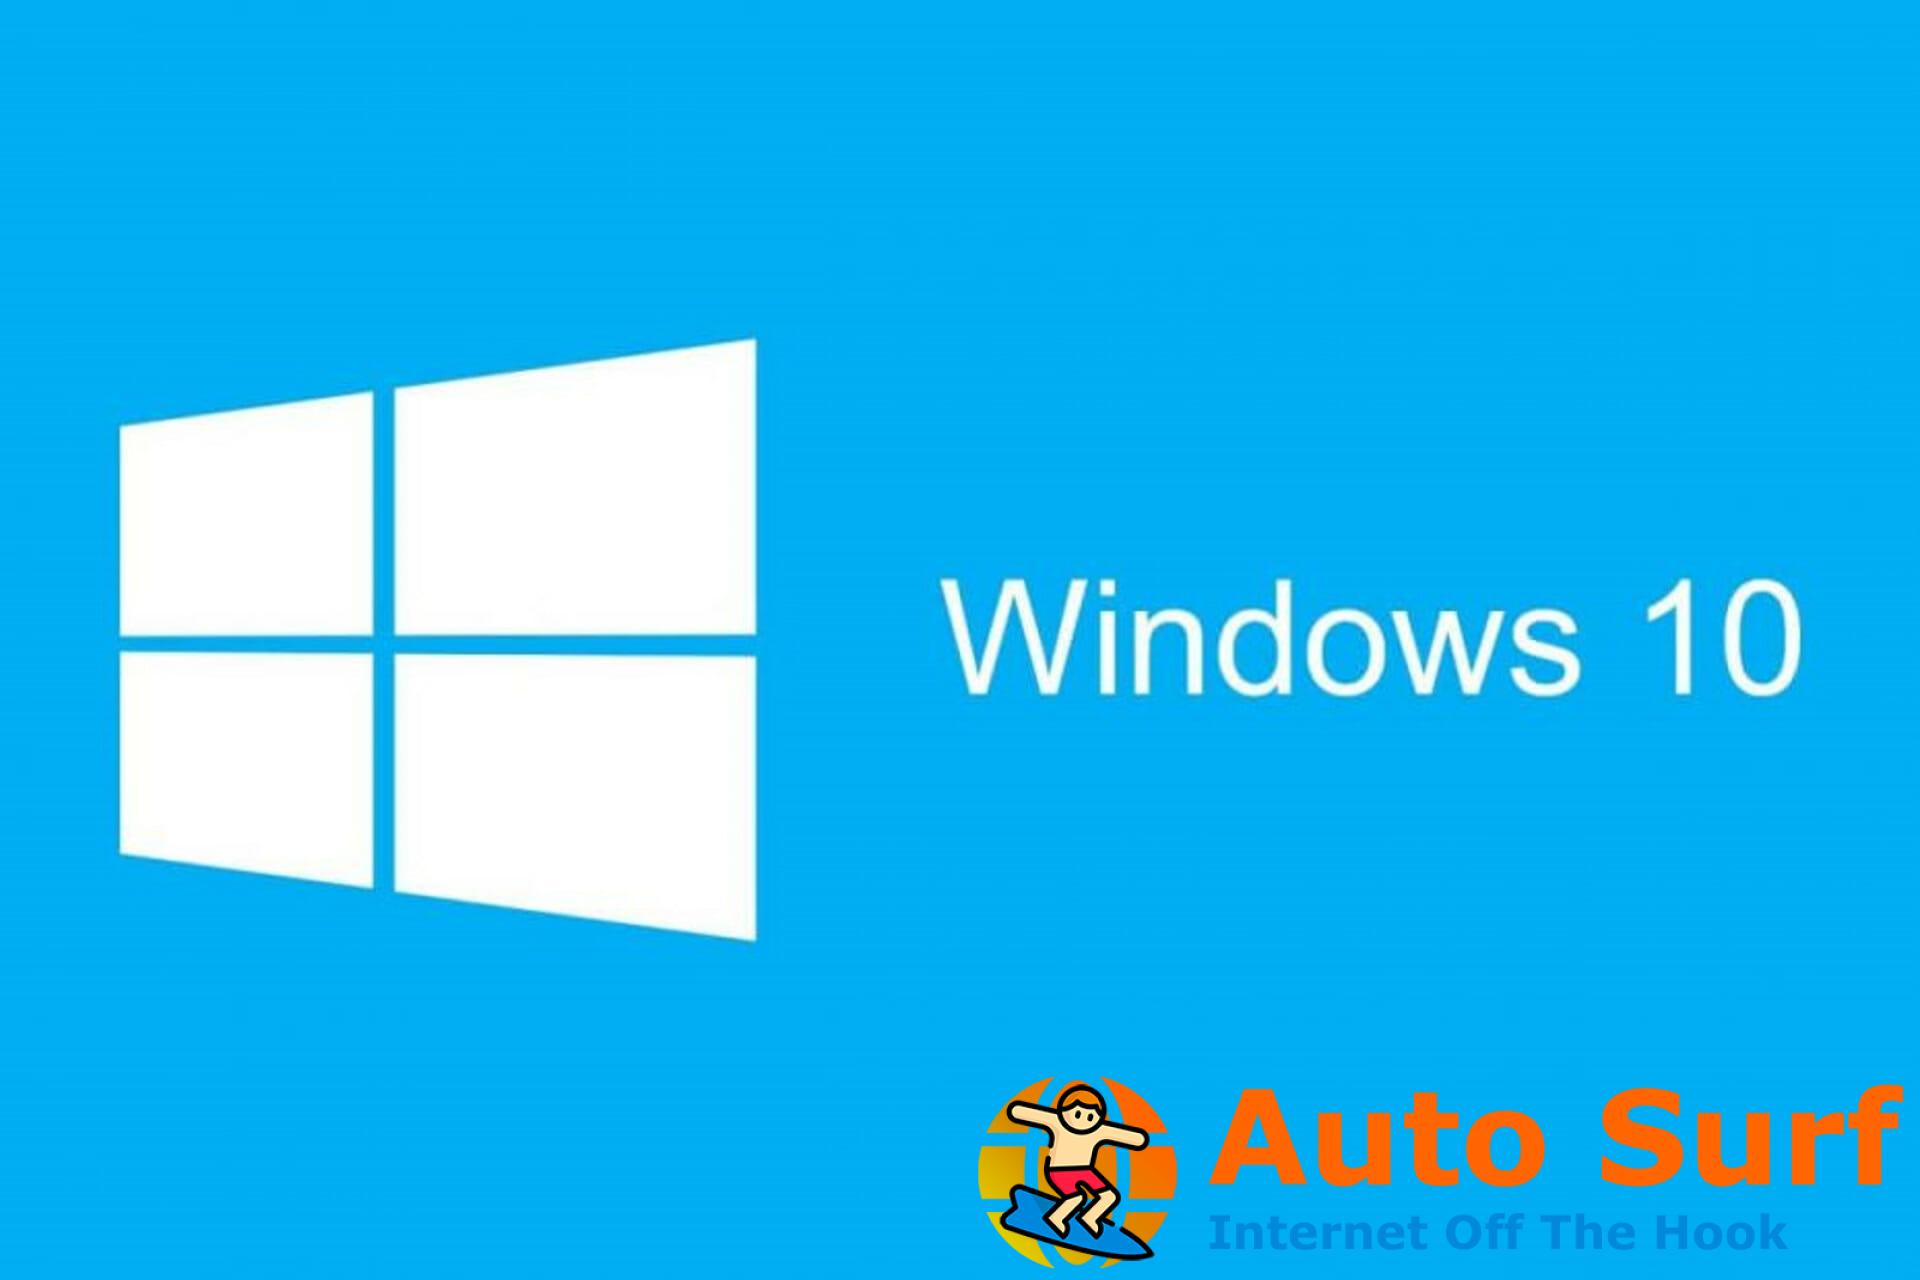 REVISIÓN: las actualizaciones de Windows interrumpen la conexión de Escritorio remoto